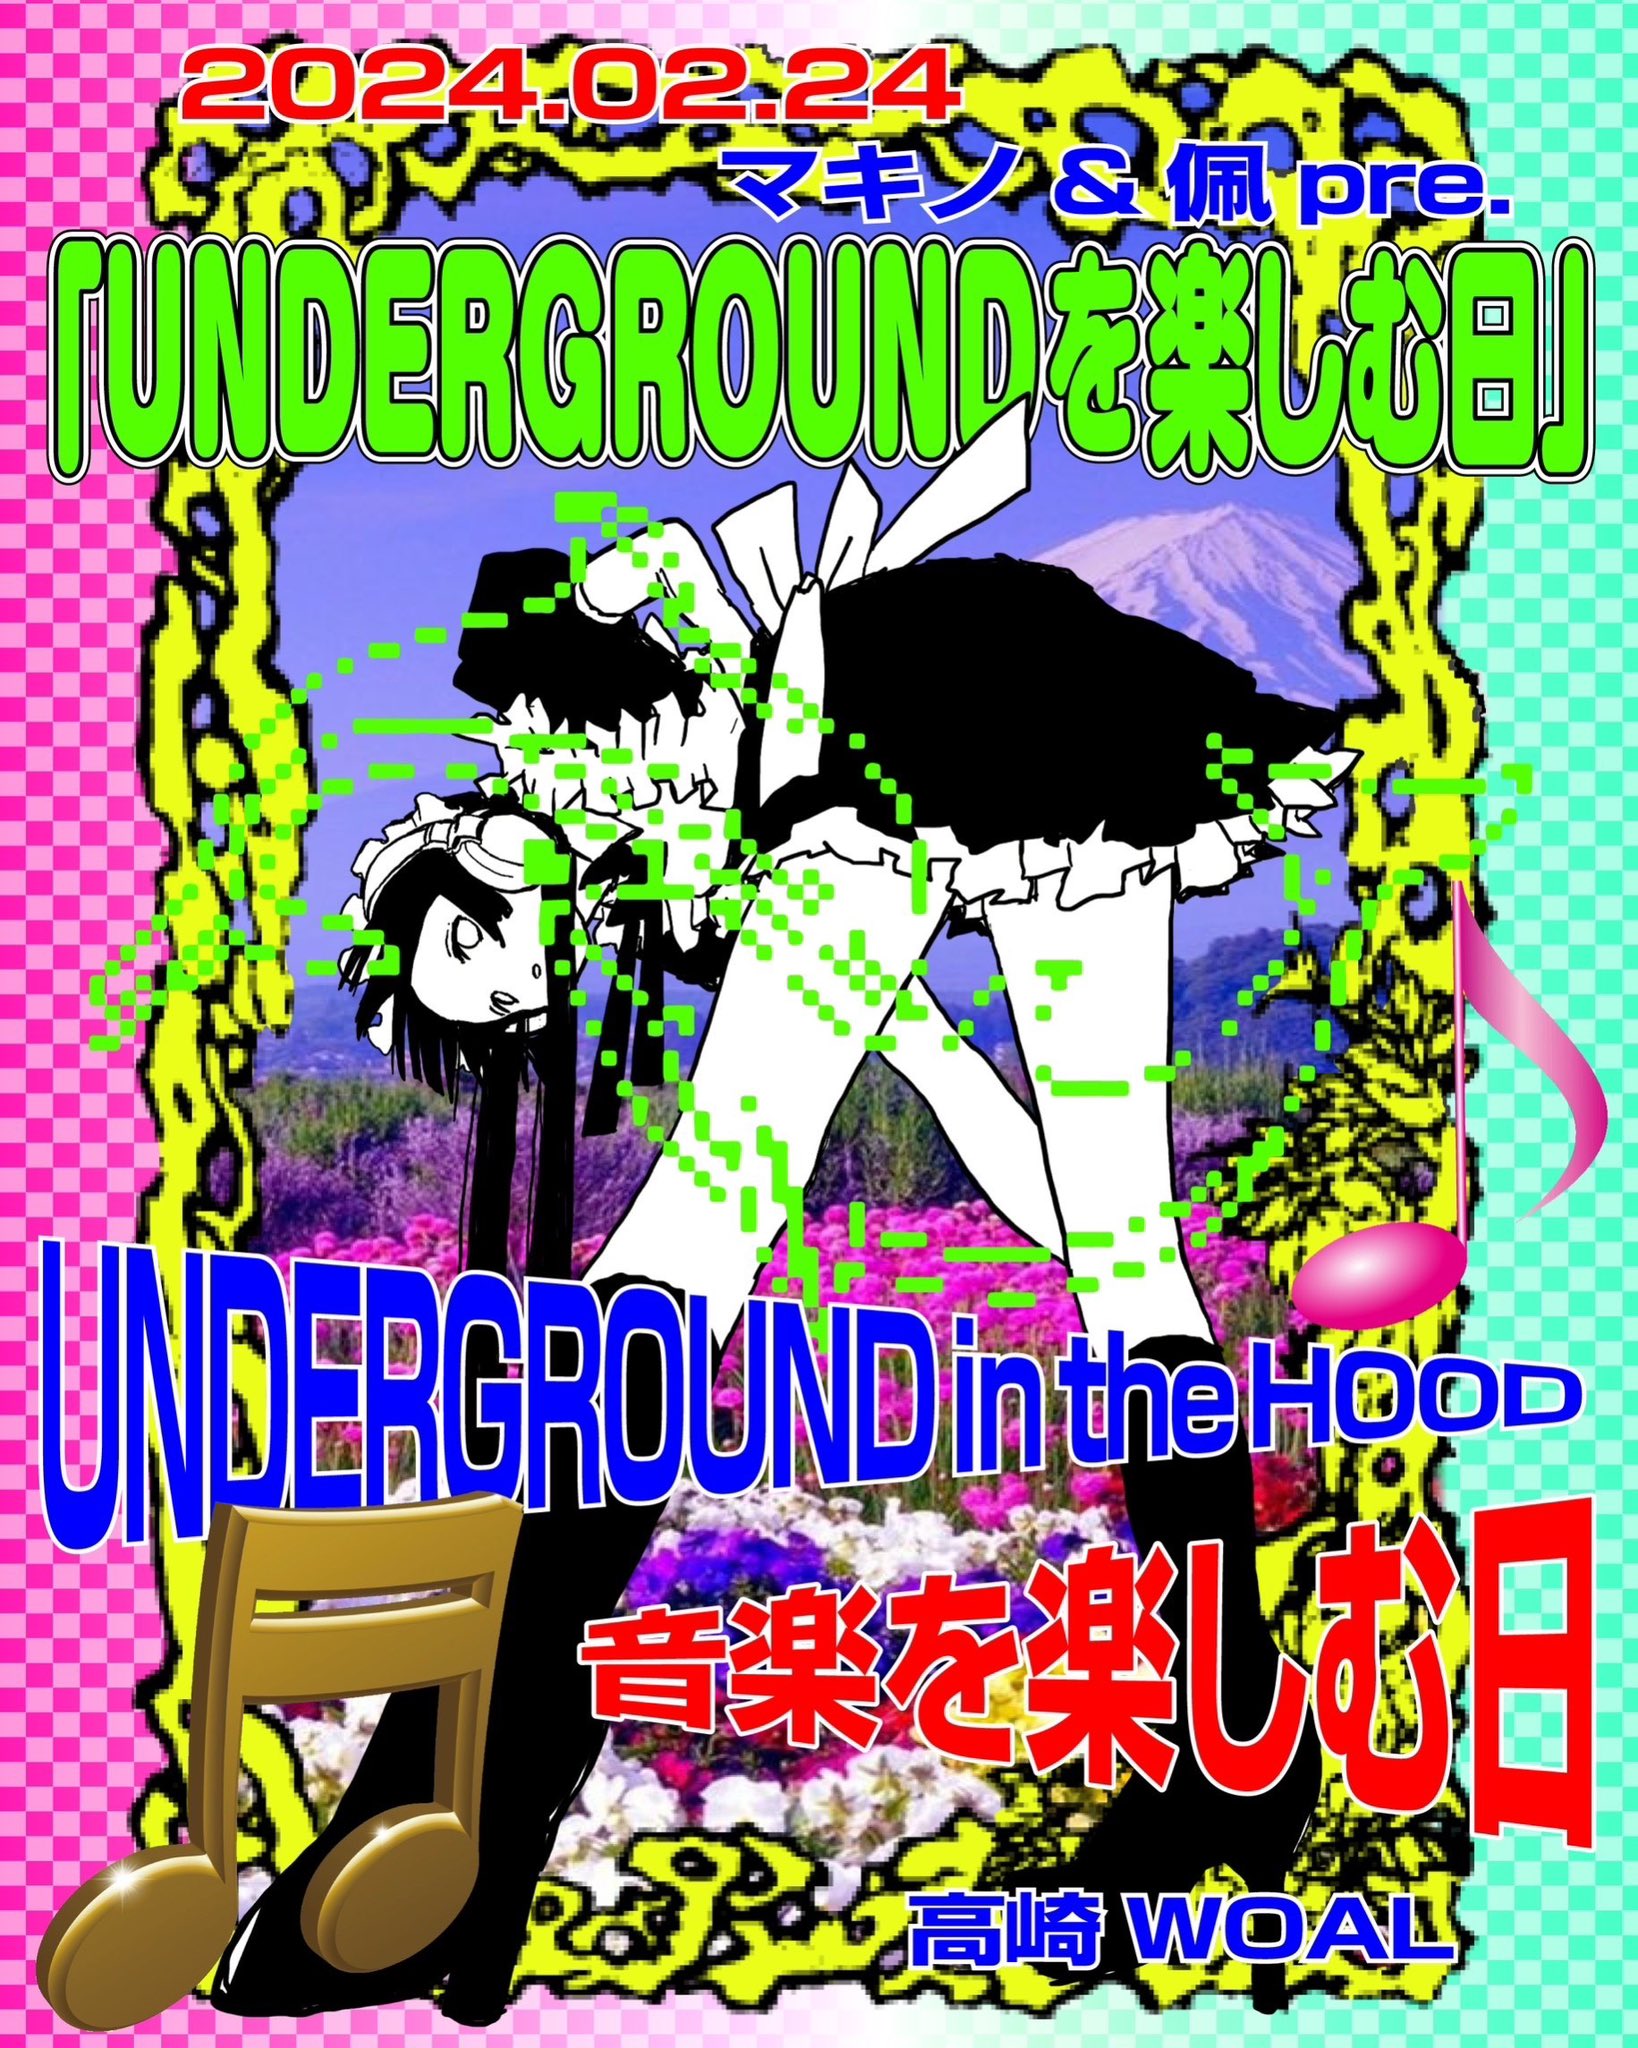 【live】「UNDERGROUNDを楽しむ日」2/24(sat)